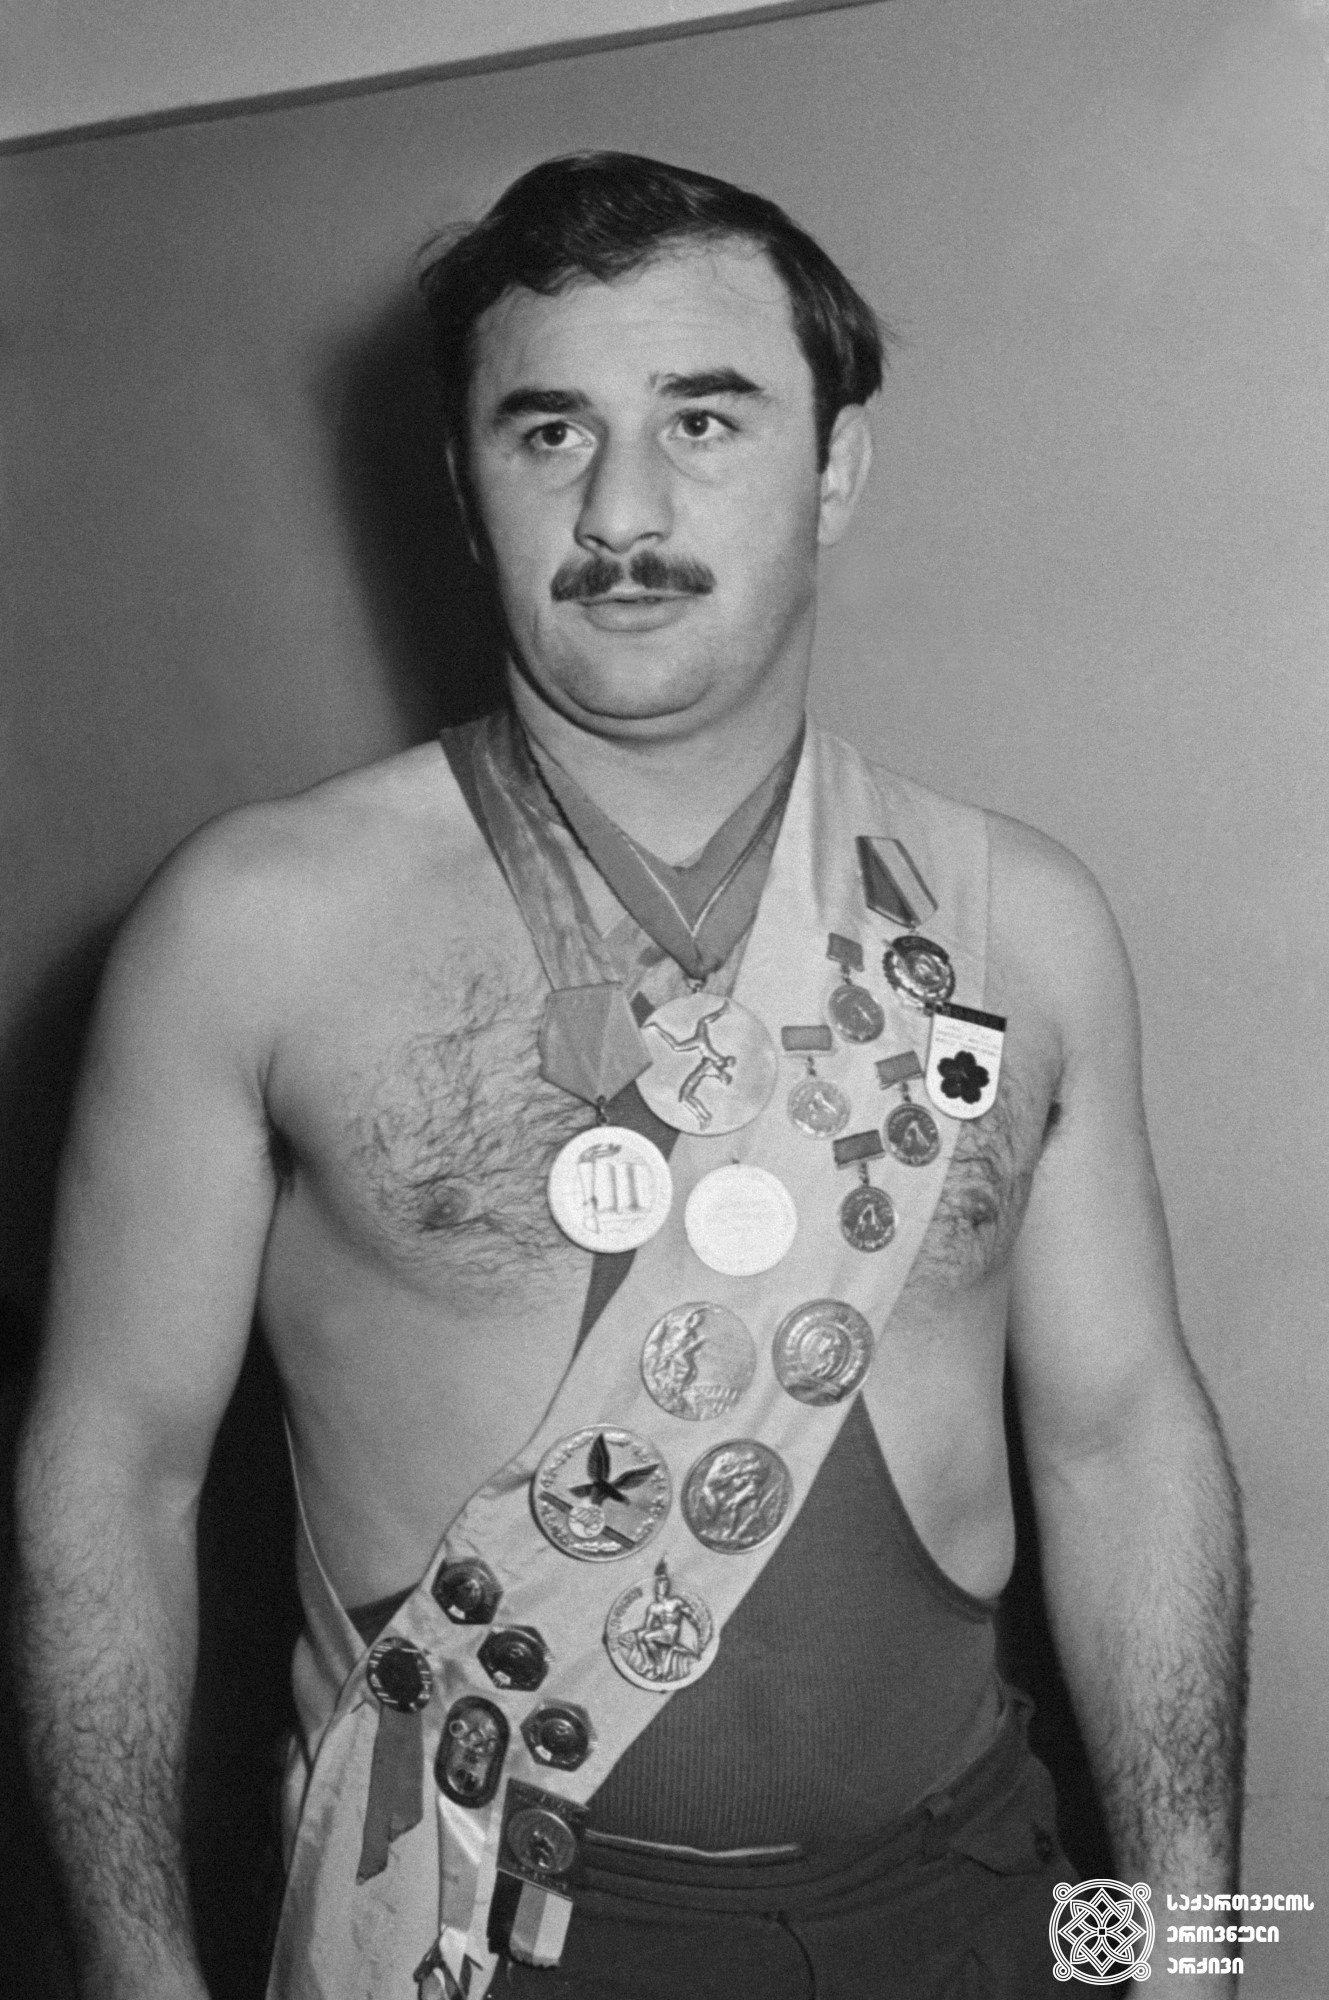 გივი კარტოზია. <br>
გივი კიკვაძის ფოტო, 1959 წელი. <br>
XVI ოლიმპიური თამაშების ჩემპიონი ბერძნულ-რომაულ ჭიდაობაში (1956 წელი; მელბურნი); XVII ოლიმპიური თამაშების მესამე პრიზიორი (1960 წელი, რომი). <br>
Givi Kartozia. <br>
Photo by Givi Kikvadze, 1959. <br>
Champion of the XVI Olympic Games in Greco-Roman style Wrestling (1959, Melbourne); third-prize winner of the XVII Olympic Games (1960, Rome).